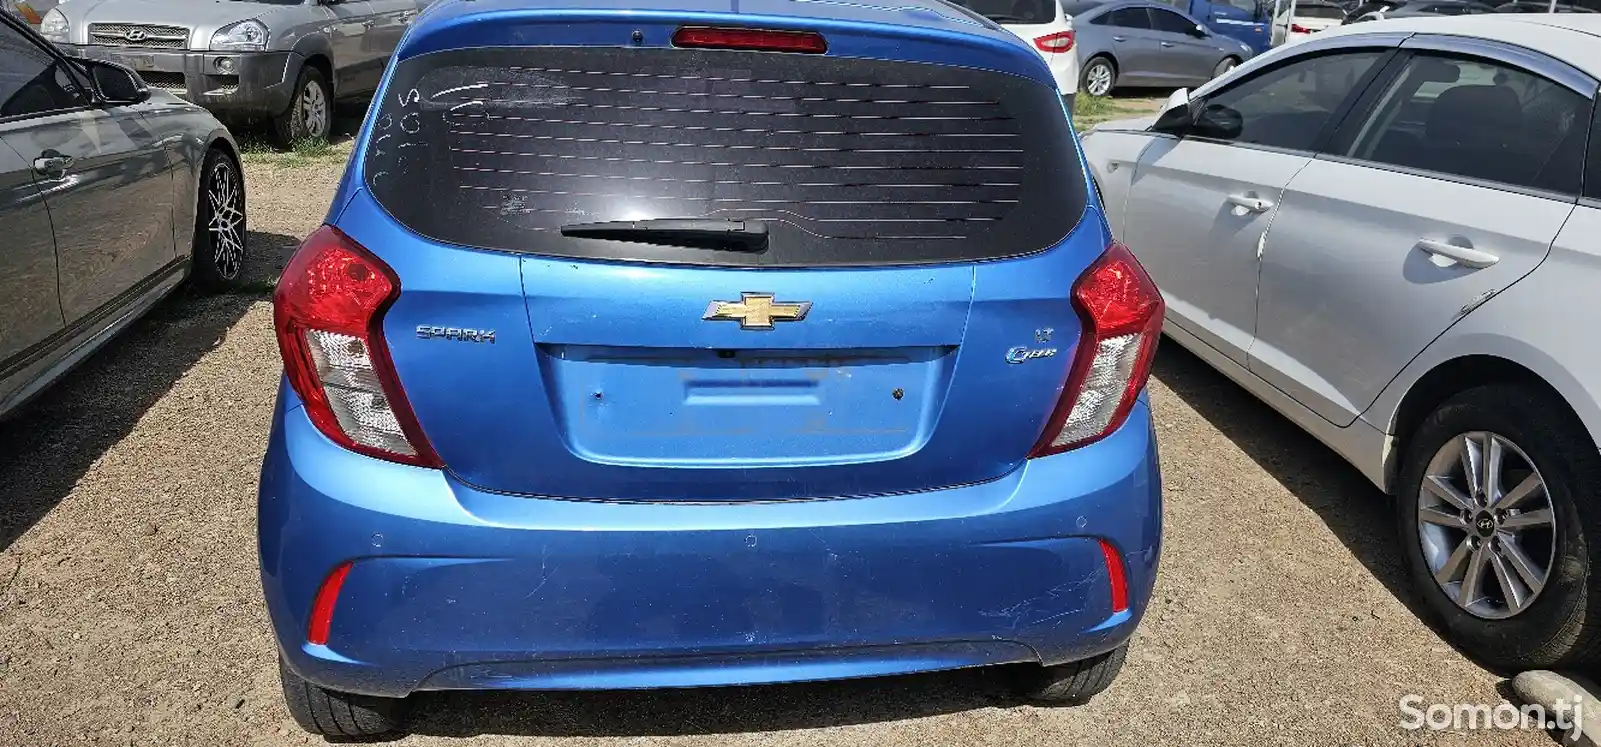 Chevrolet Spark, 2016-2